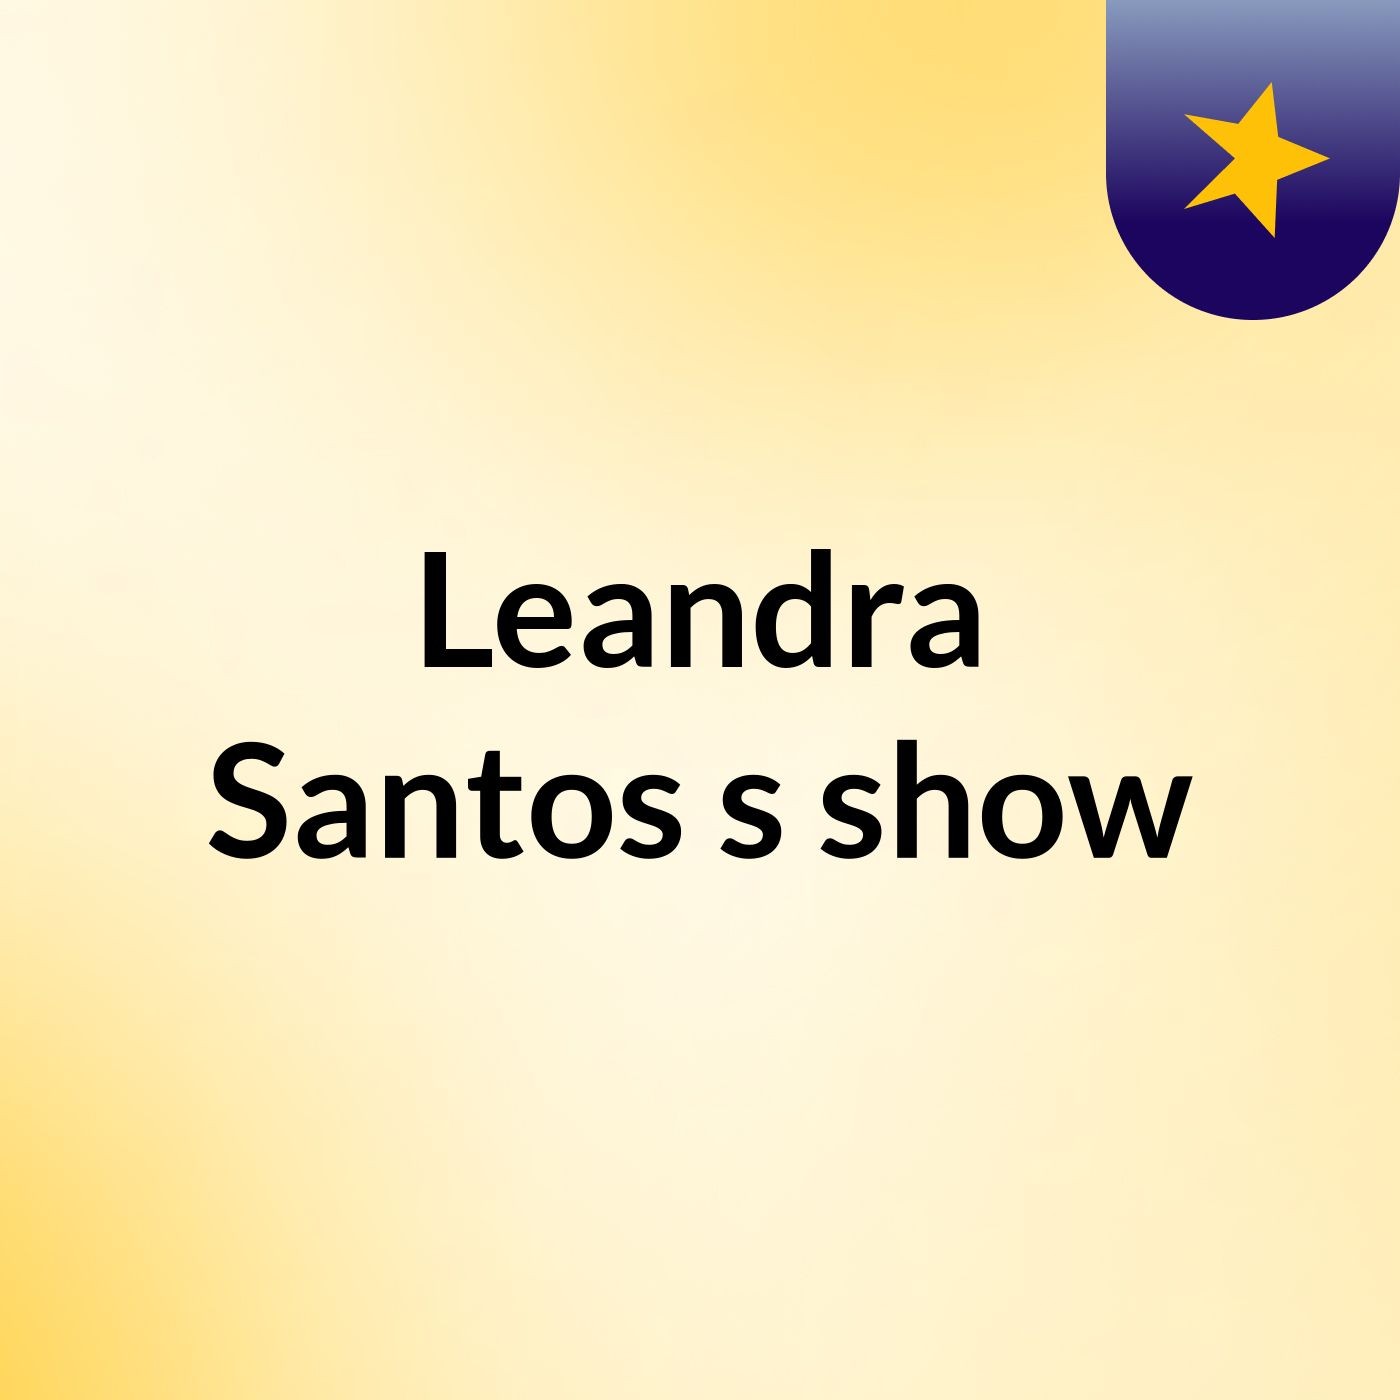 Leandra Santos's show